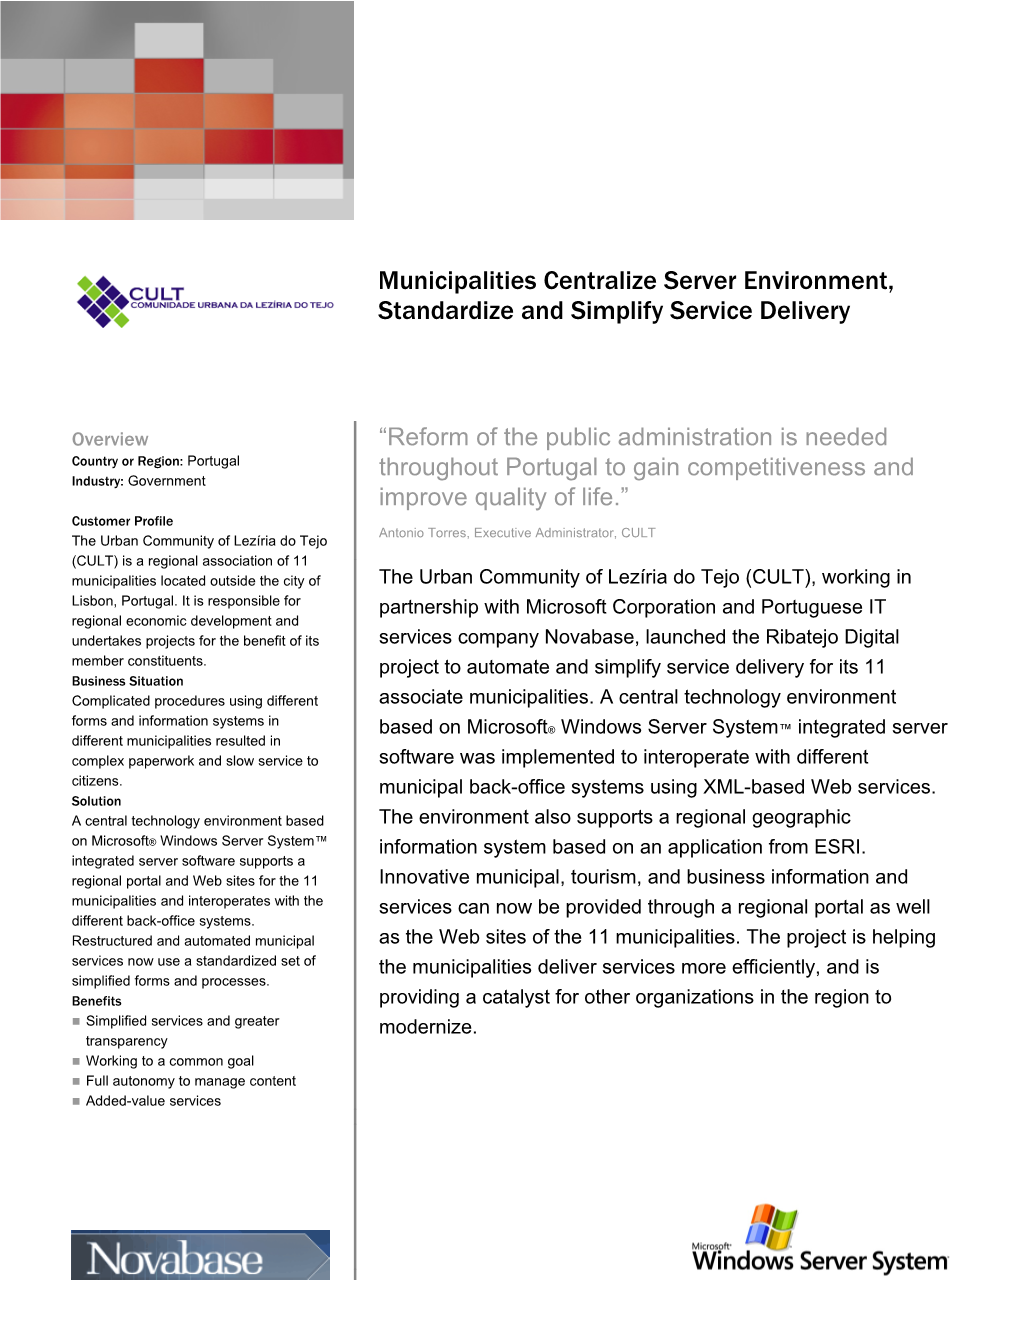 Municipalities Centralize Server Platform, Standardize and Simplify Service Delivery